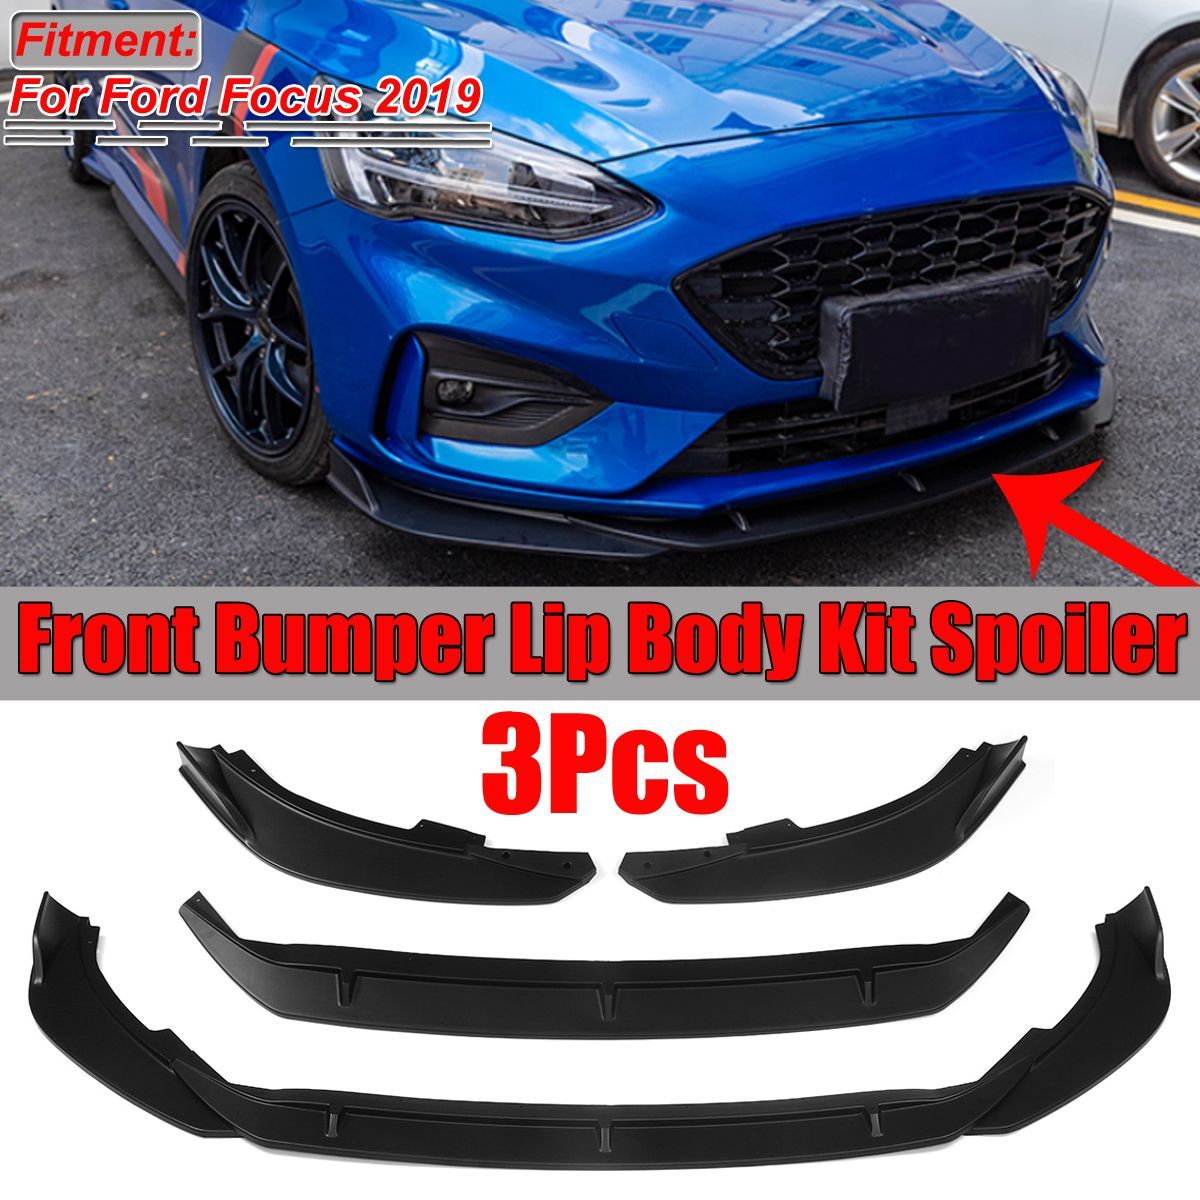 3PCS-Matte-Black-Front-Bumper-Lip-Spoiler-Cover-Trim-For-Ford-Focus-2019-1657228